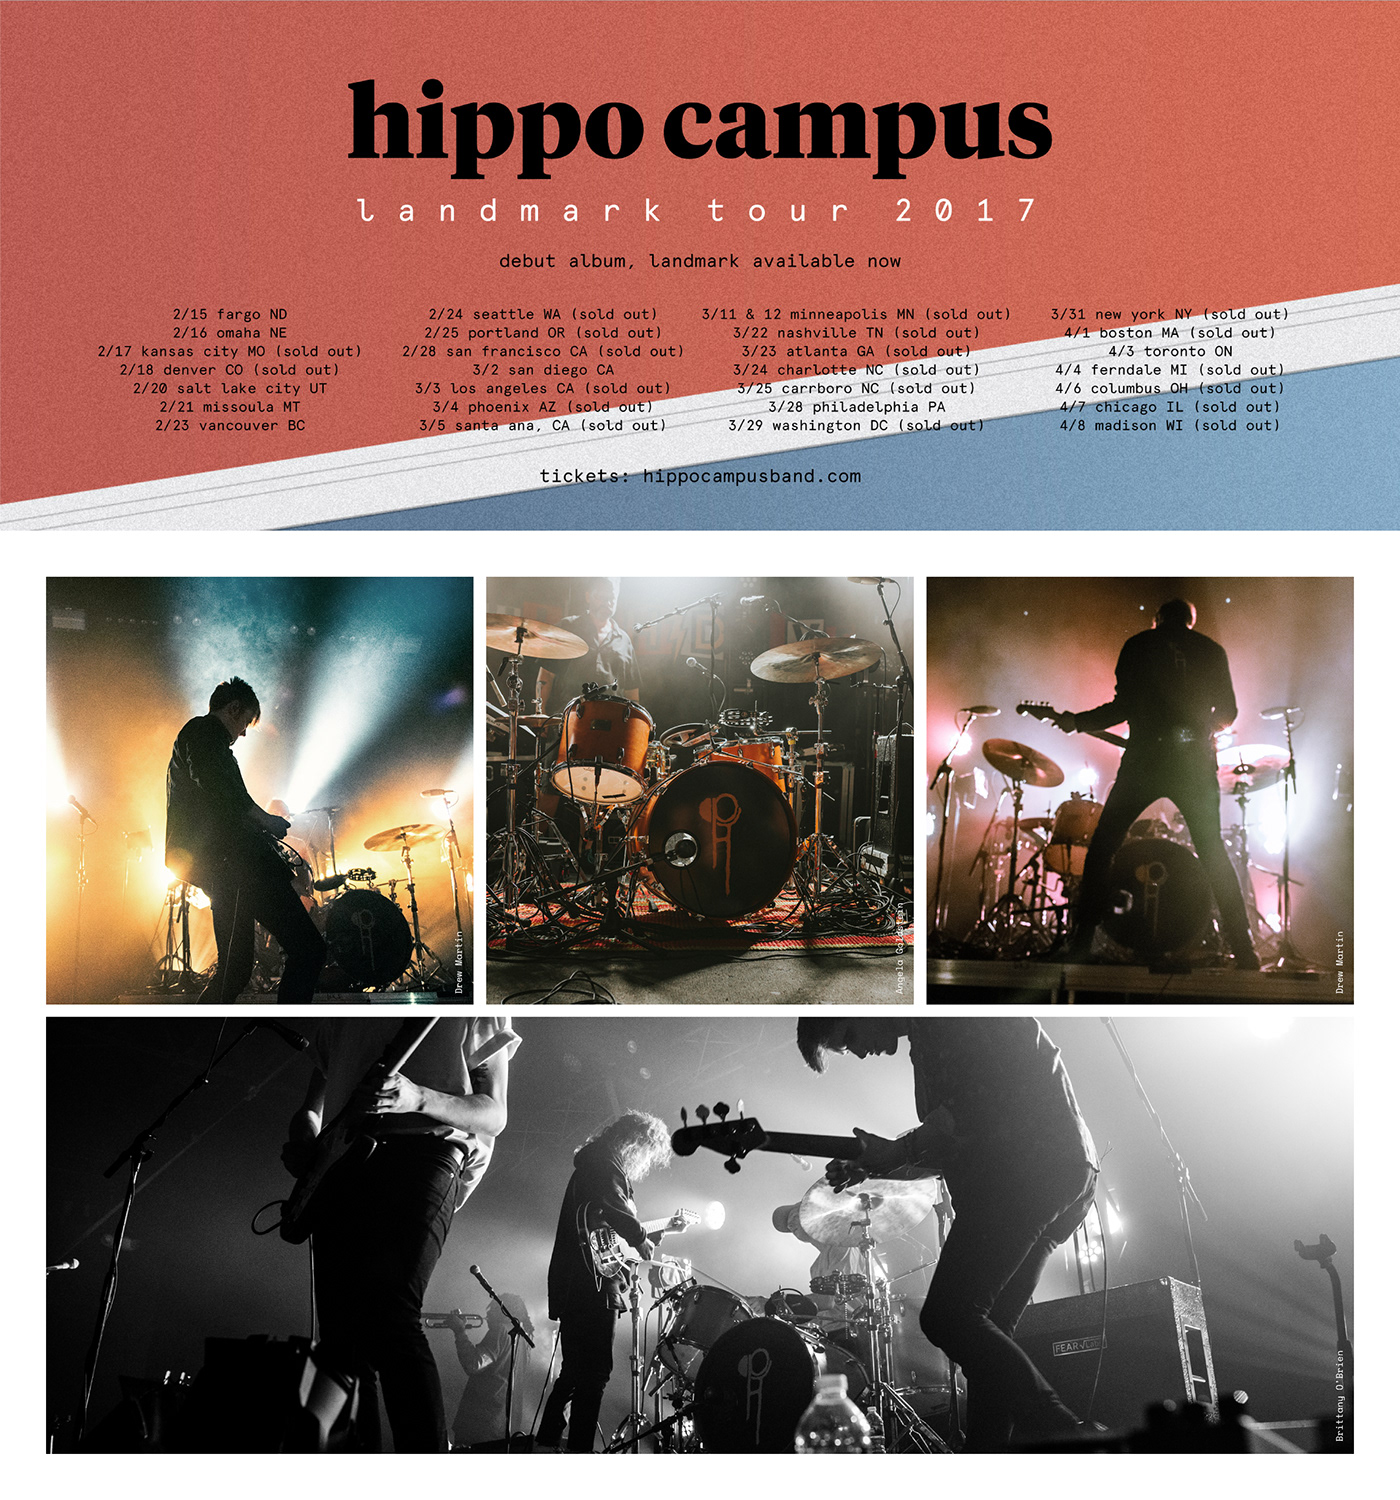 Album art design Packaging hippo campus Landmark LP vinyl cd